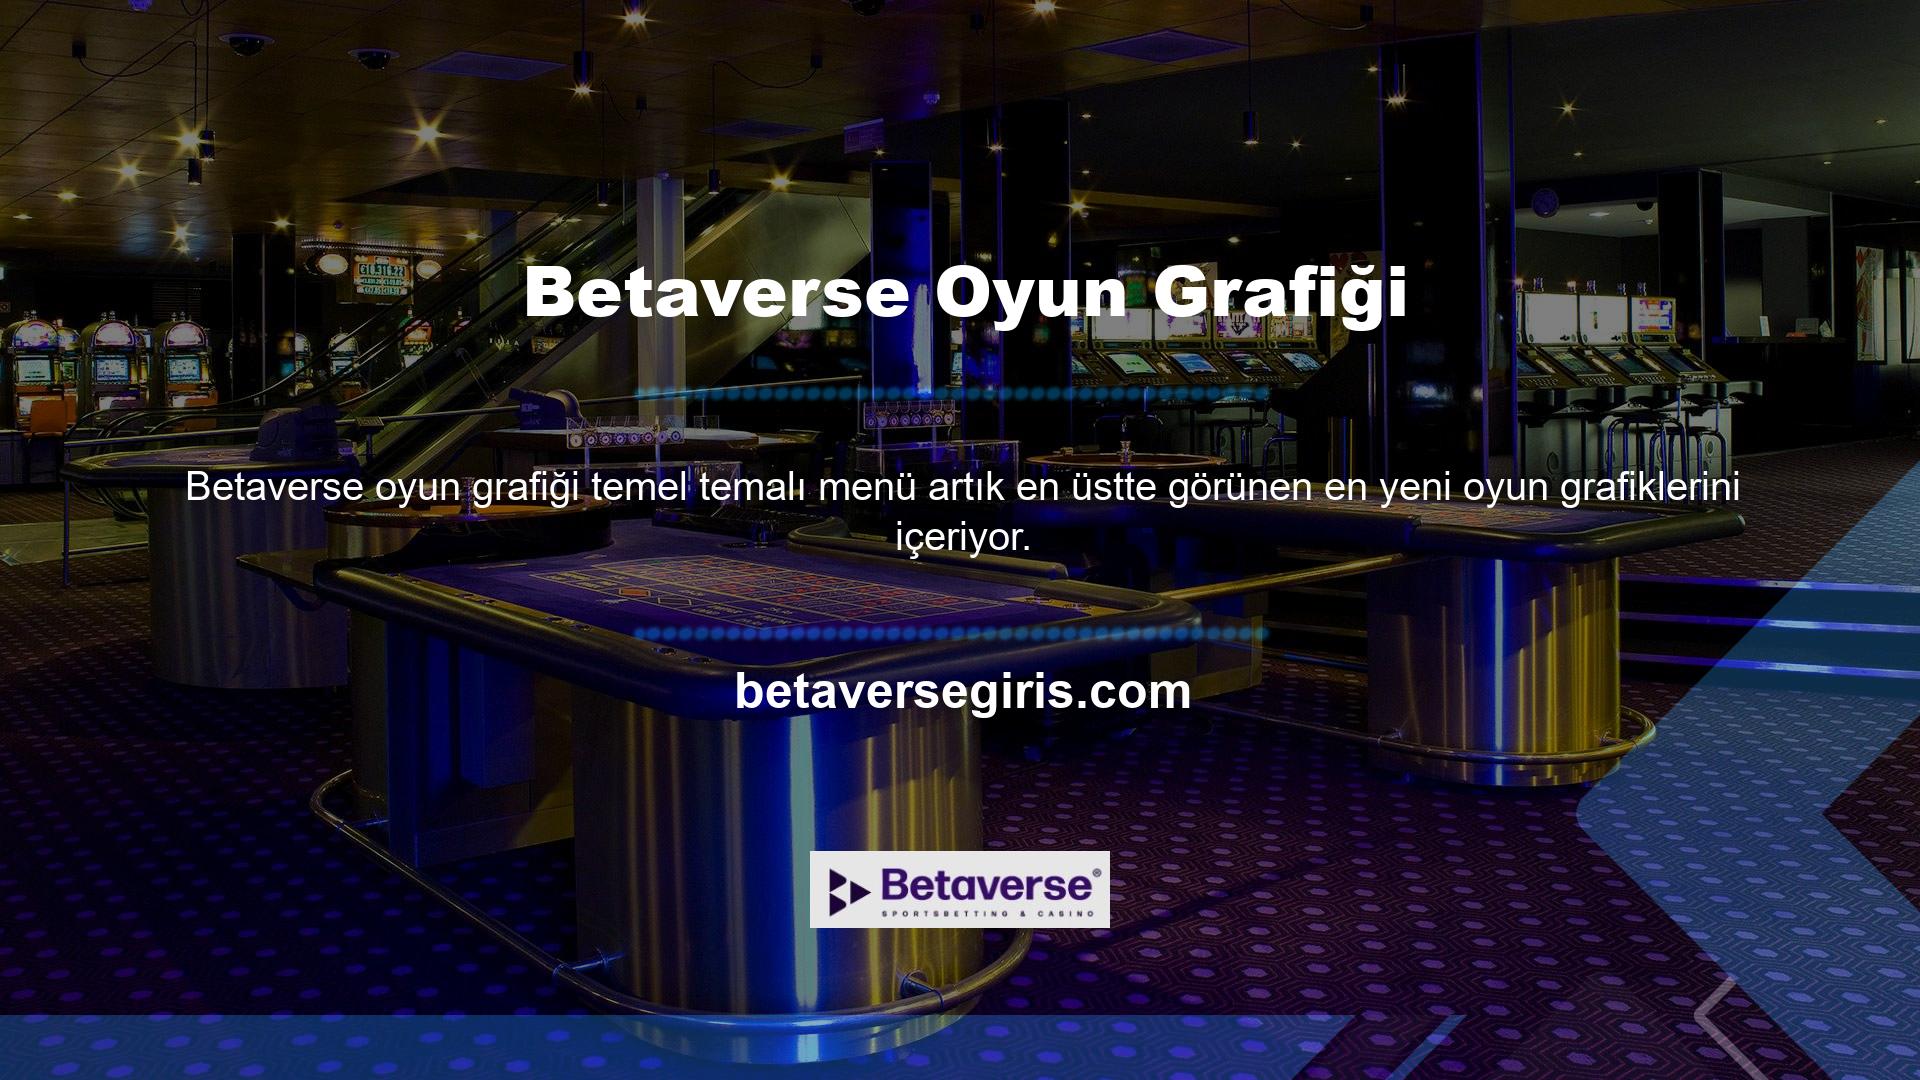 Casinonun ayrıcalıklı özellikleri, kaydolabileceğiniz Betaverse sitesinde mevcuttur